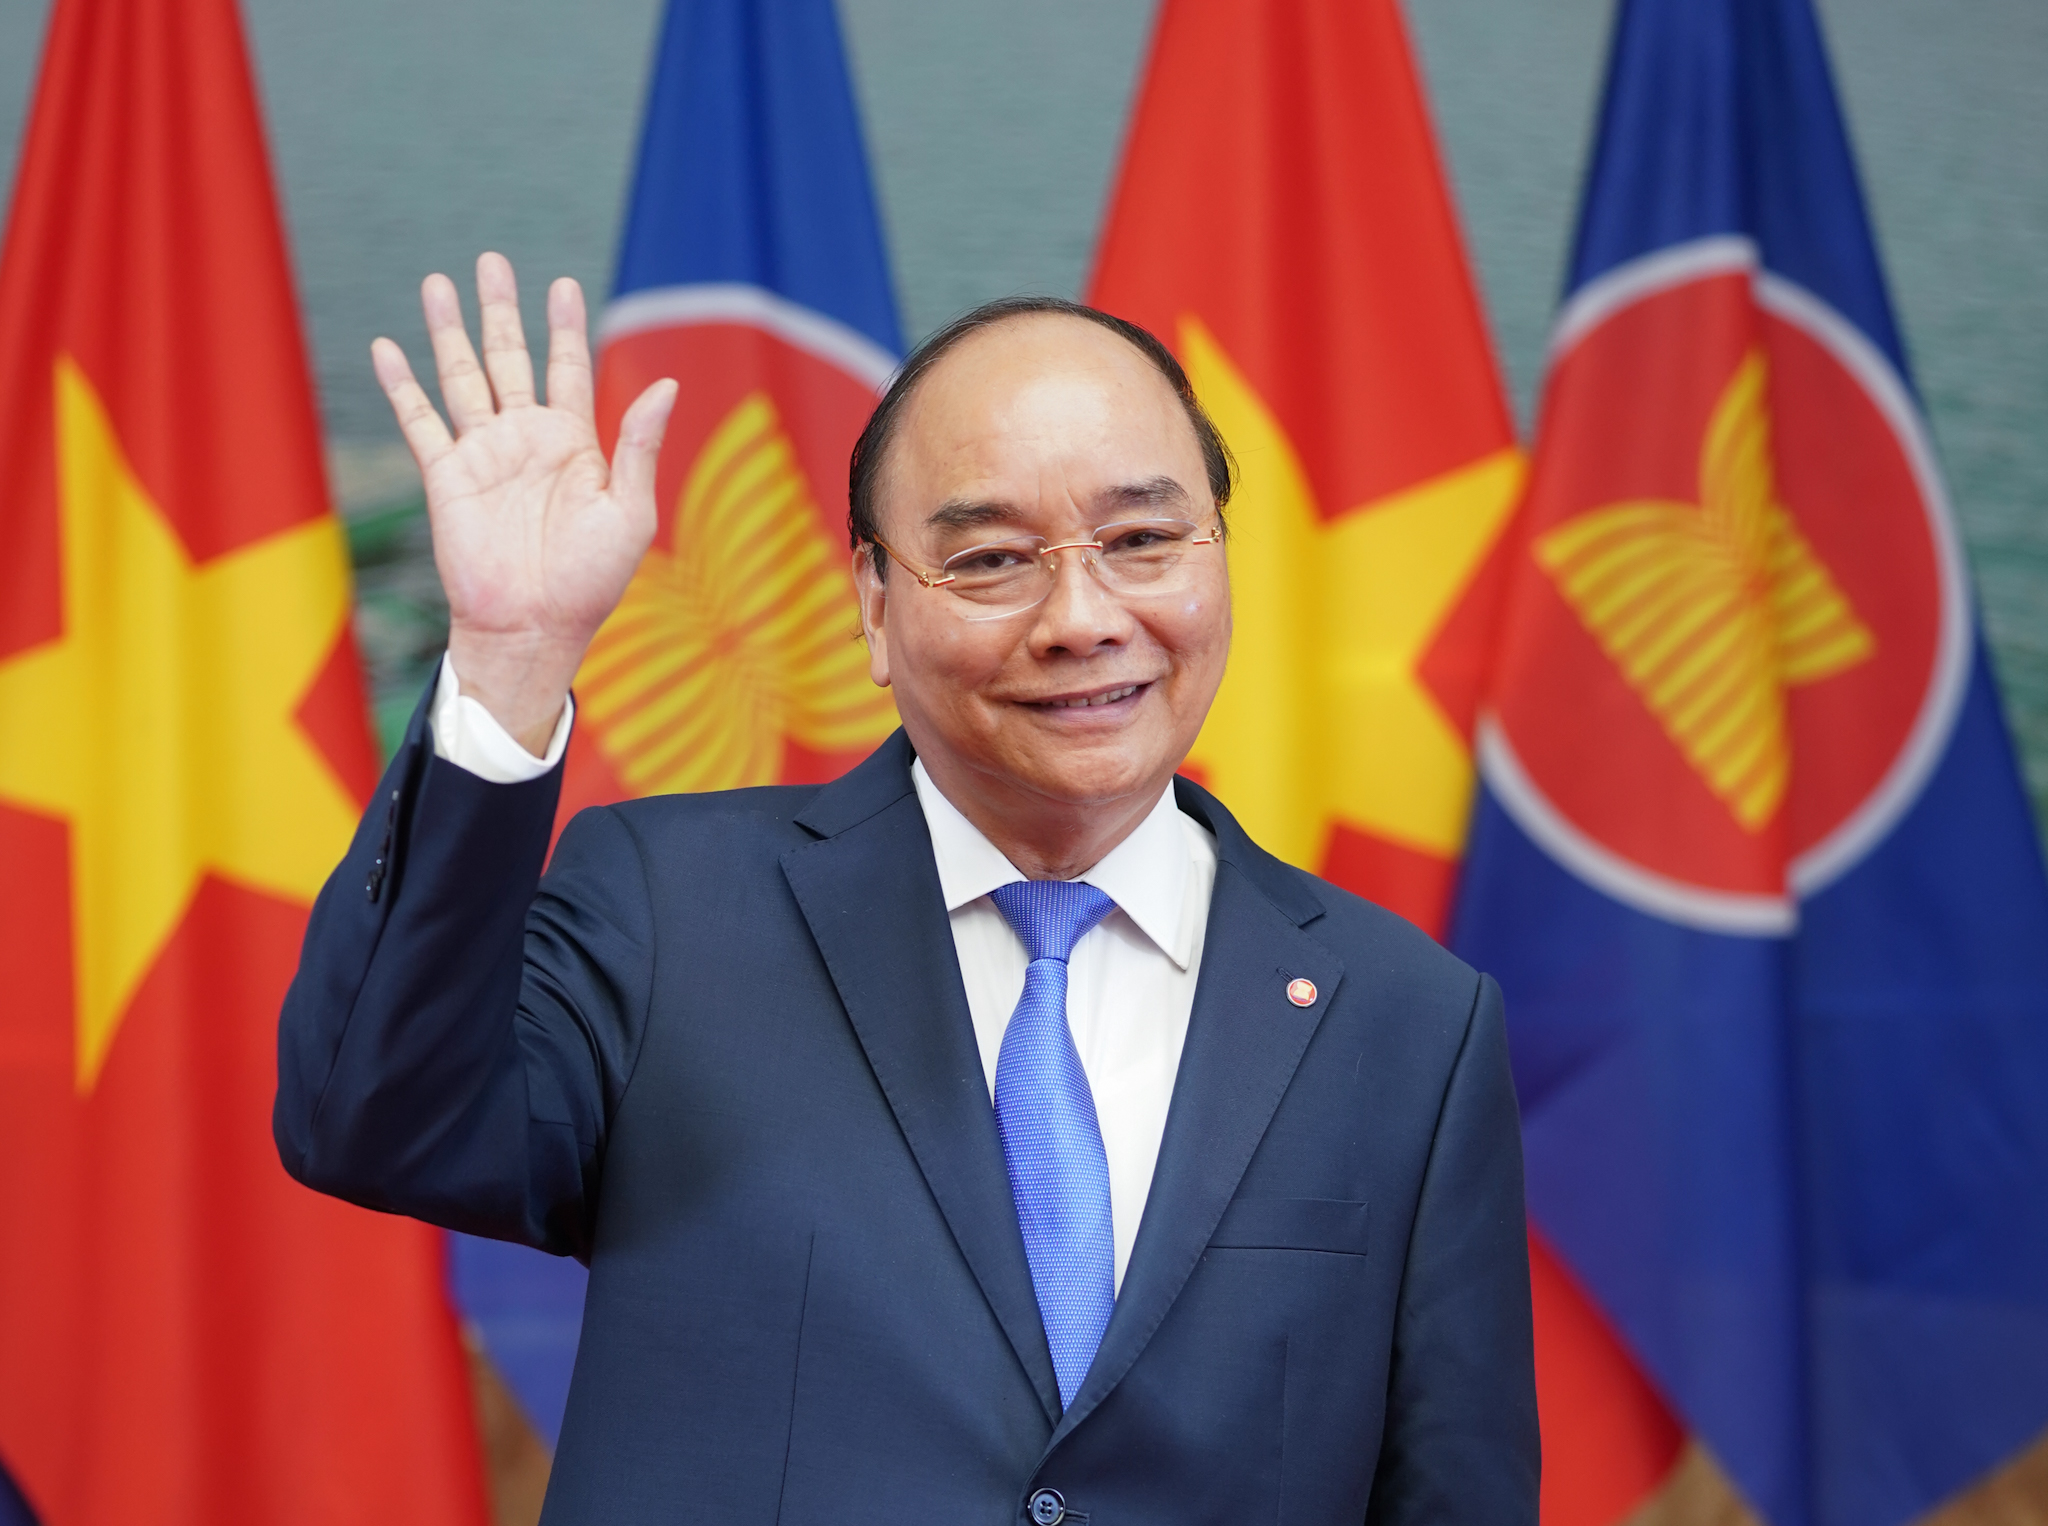 Thông điệp của Thủ tướng nhân kỷ niệm 53 năm thành lập ASEAN và 25 năm Việt Nam tham gia ASEAN